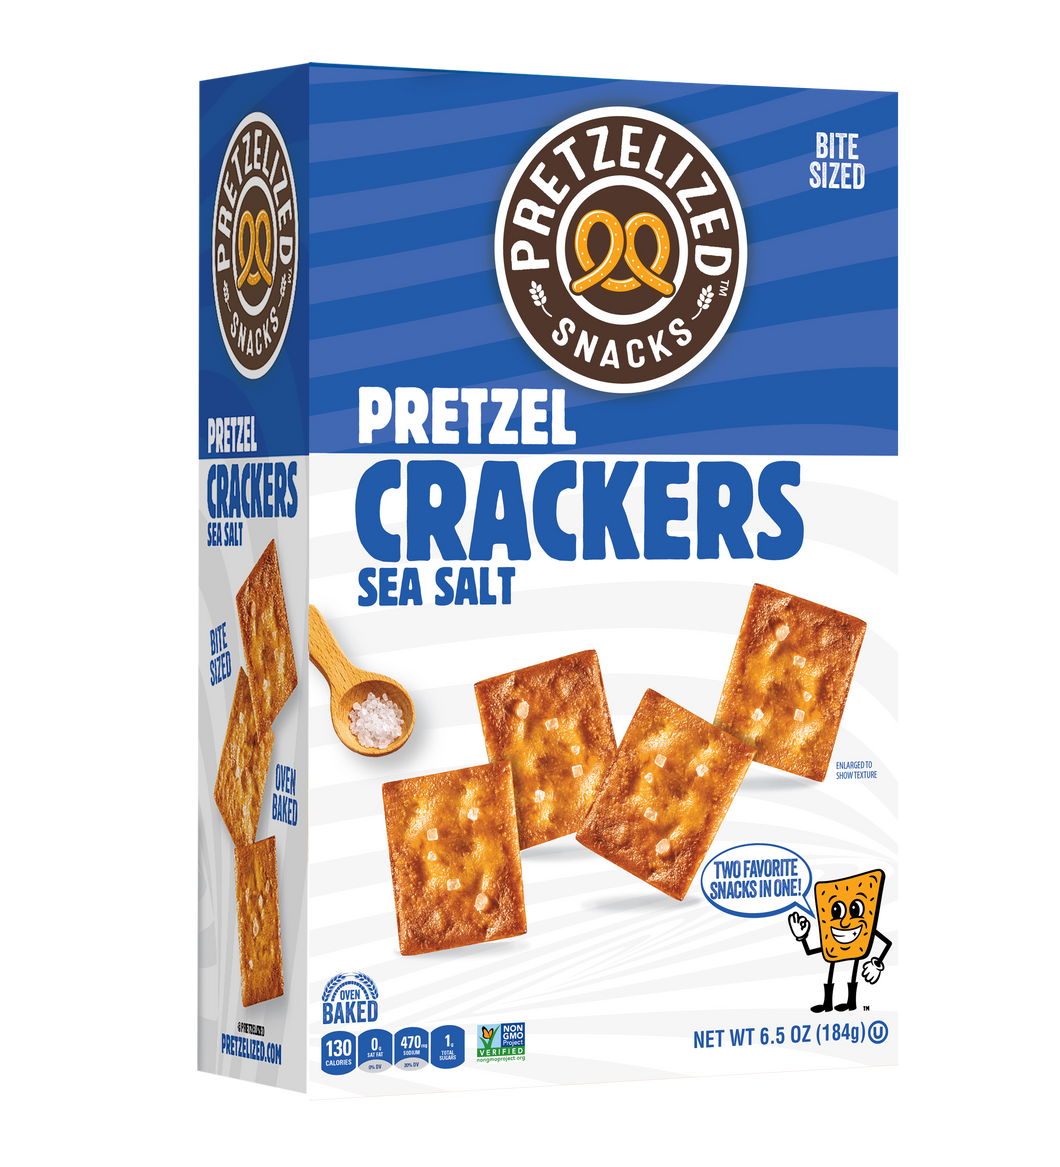 PRETZELIZED Pretzel Crackers, Sea Salt Flavored, 6.5oz Box - Multi-Pack